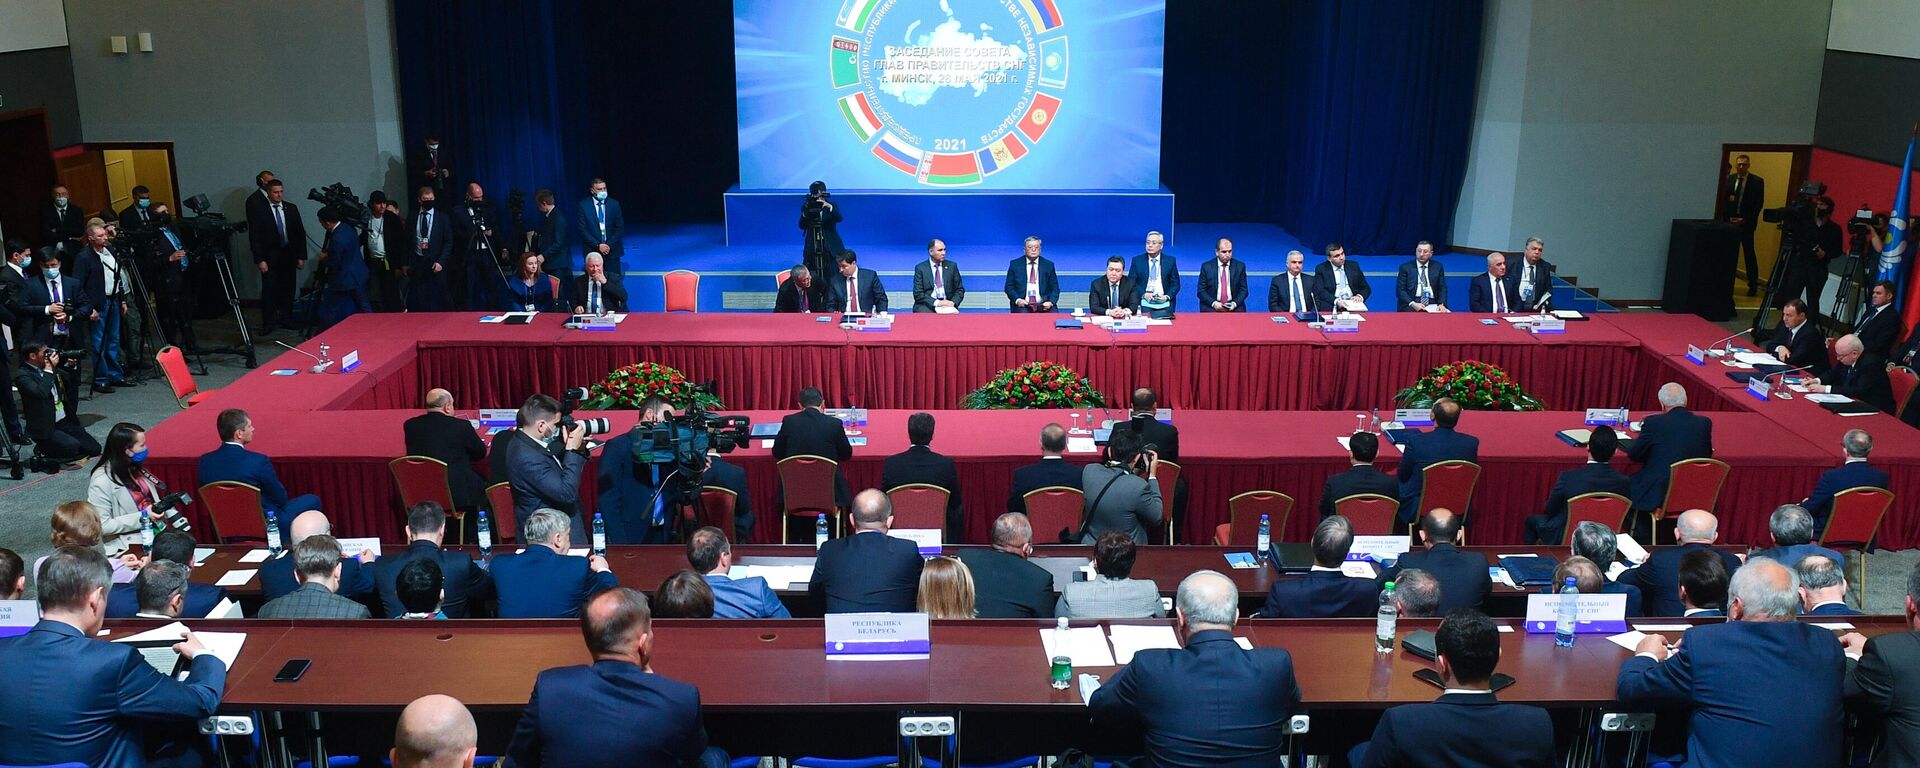 Заседание Совета глав правительств СНГ в расширенном составе в Минске - Sputnik Узбекистан, 1920, 29.05.2021